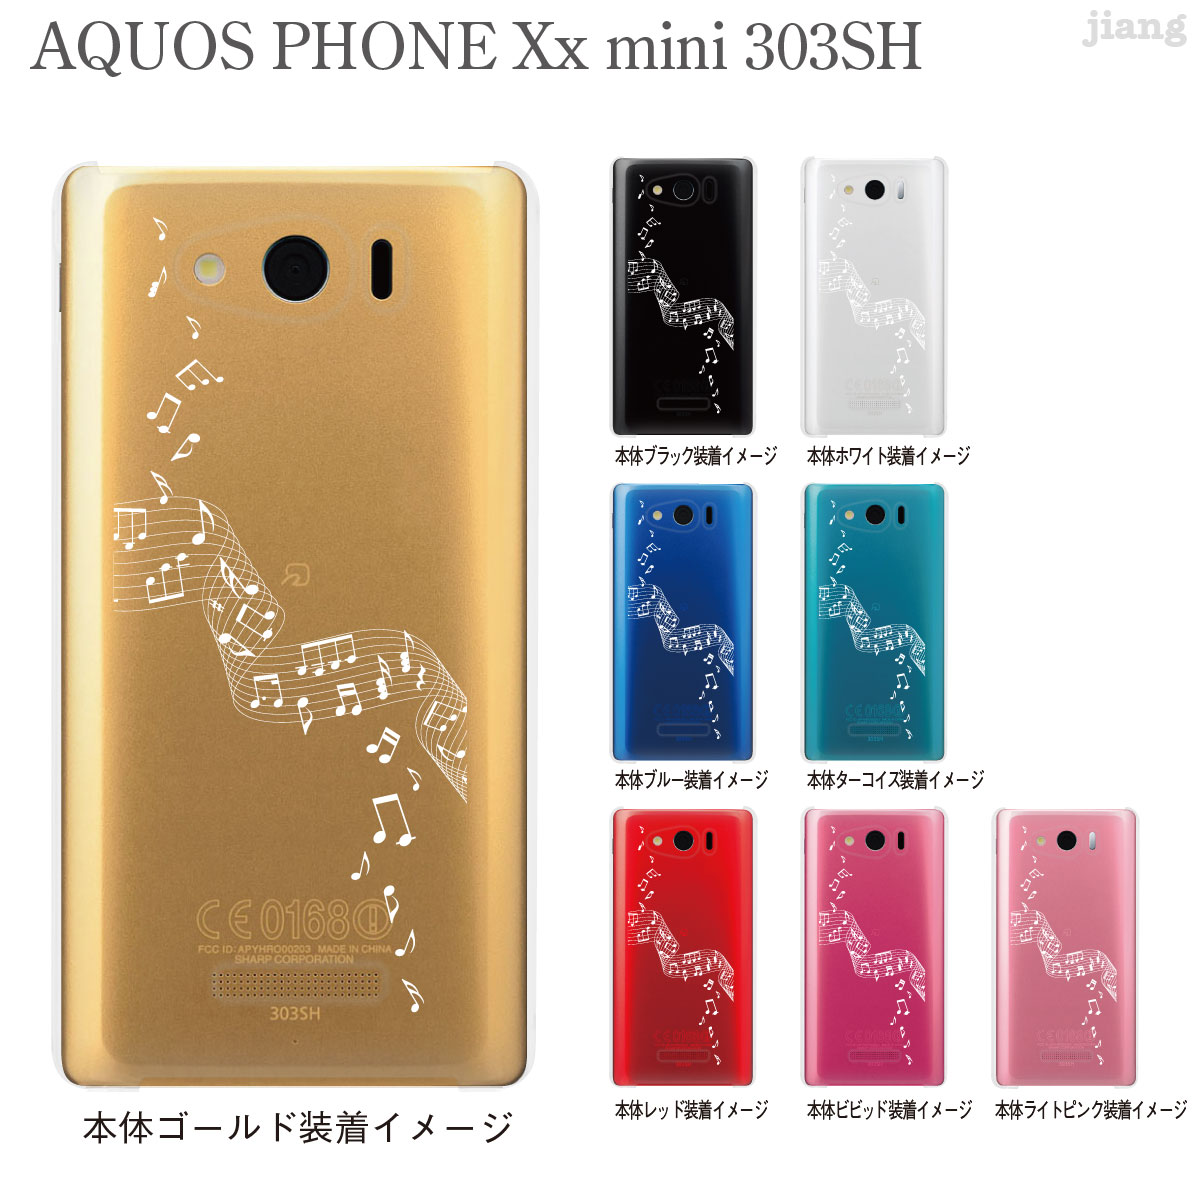 AQUOS PHONE Xx mini 303SH Soft Bank P[X Jo[ X}zP[X NAP[X Clear Arts  09-303sh-mu0002